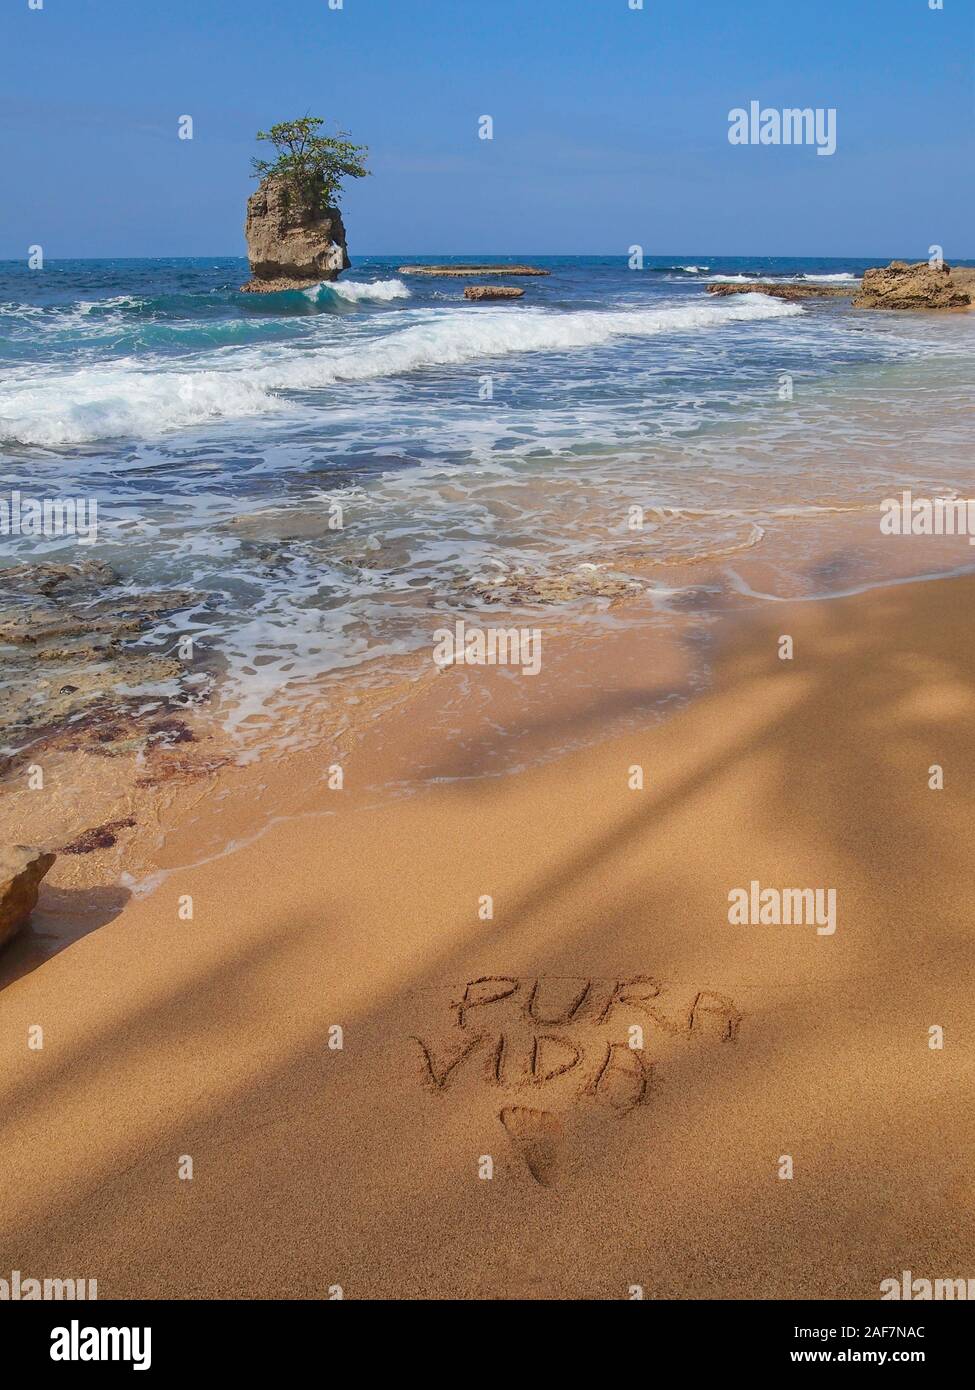 Tropical sea shore avec un îlot rocheux et les mots "Pura Vida" écrit dans le sable, côte caraïbe du Costa Rica, Amérique Centrale Banque D'Images